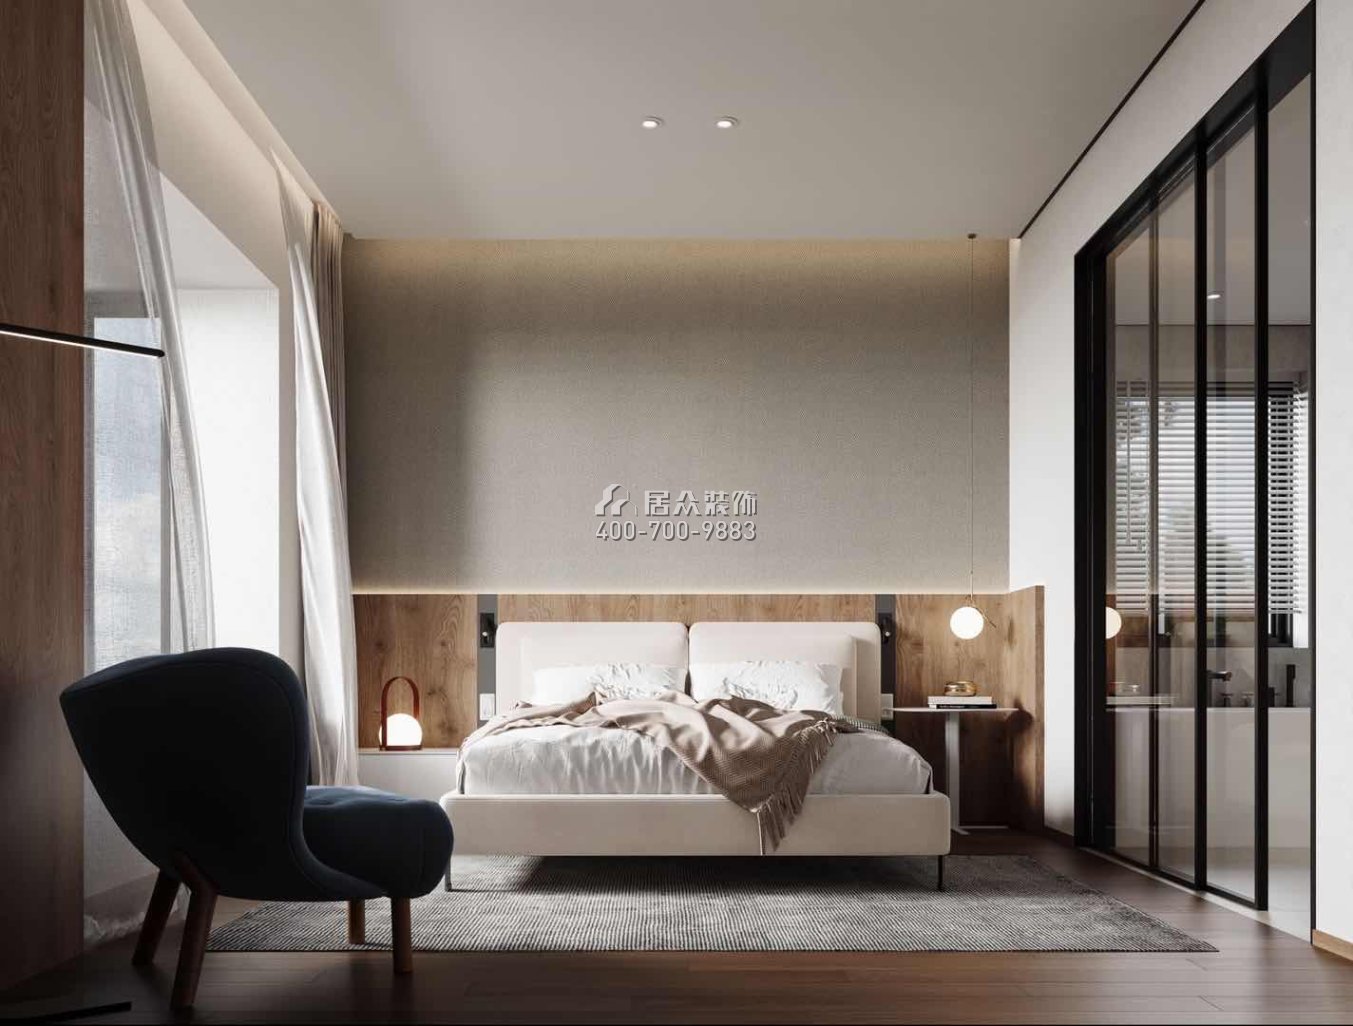 中建江山壹号197平方米现代简约风格平层户型卧室装修效果图